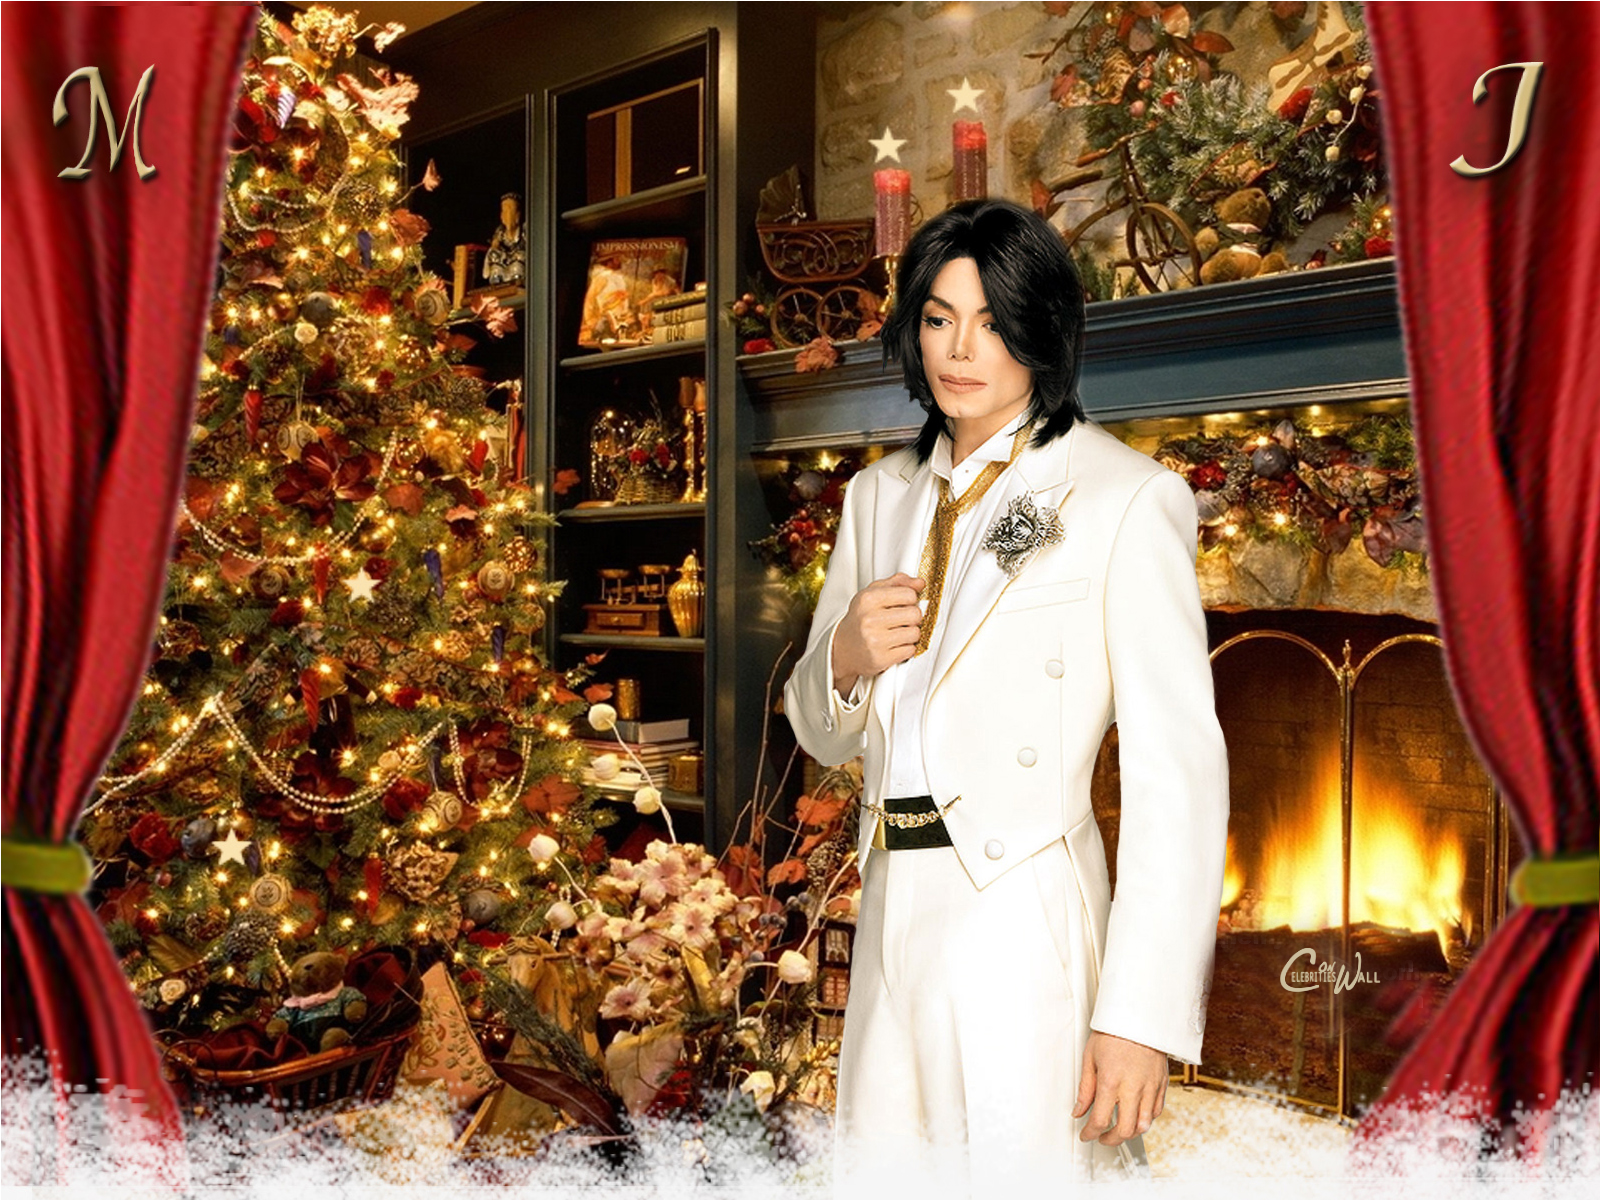 Michaeljackson On Christmas Michael Jackson Wallpaper